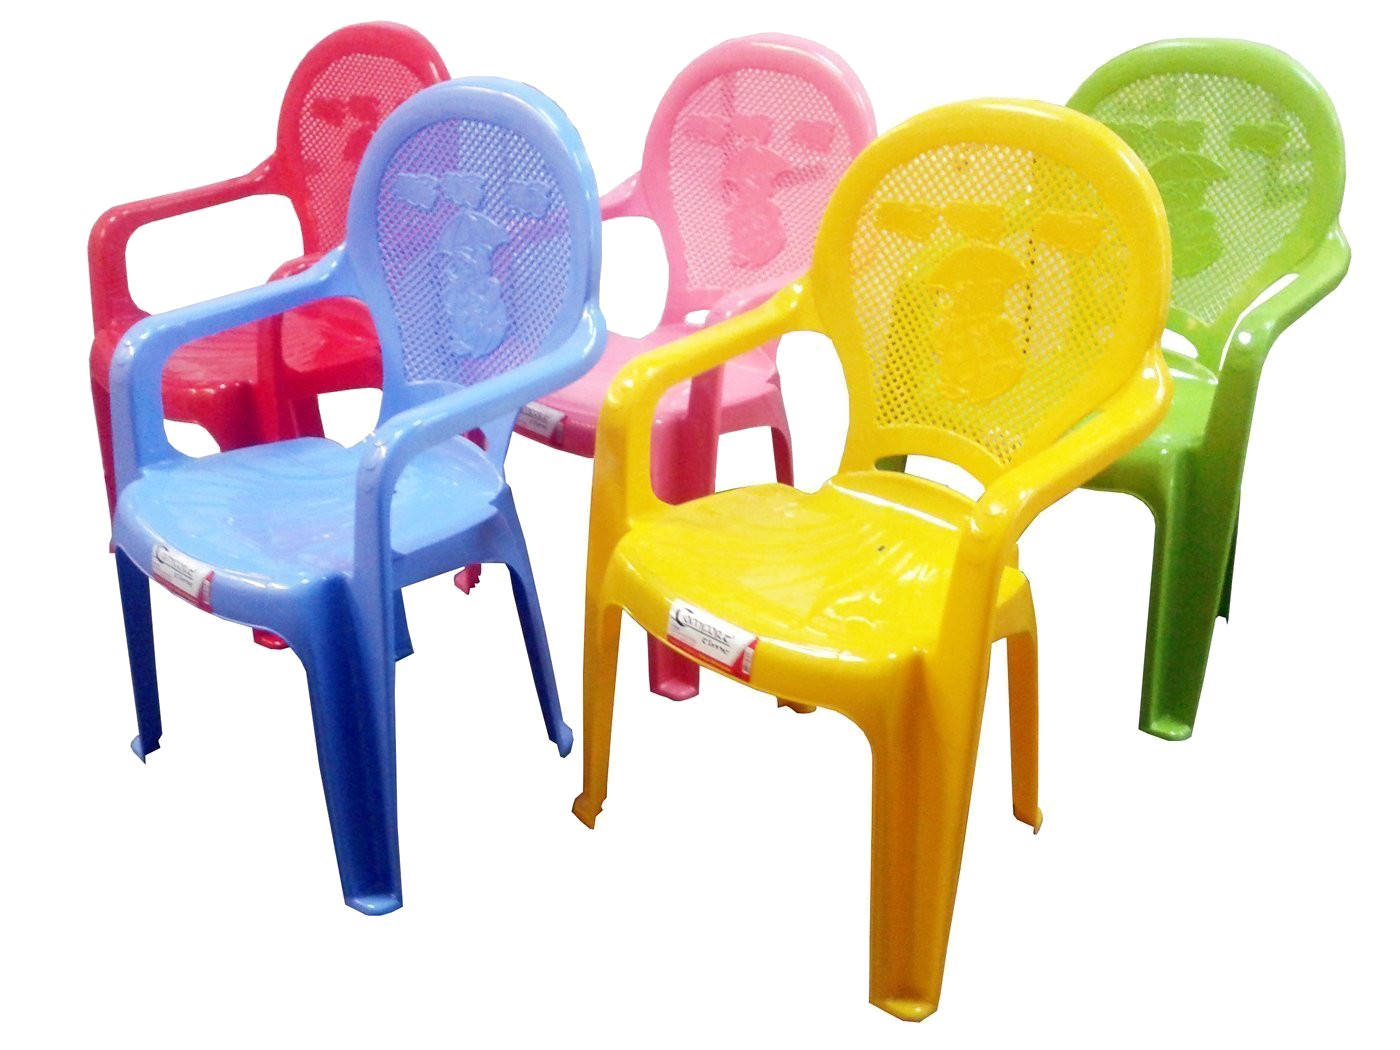 Imagen PNG de muebles de plástico